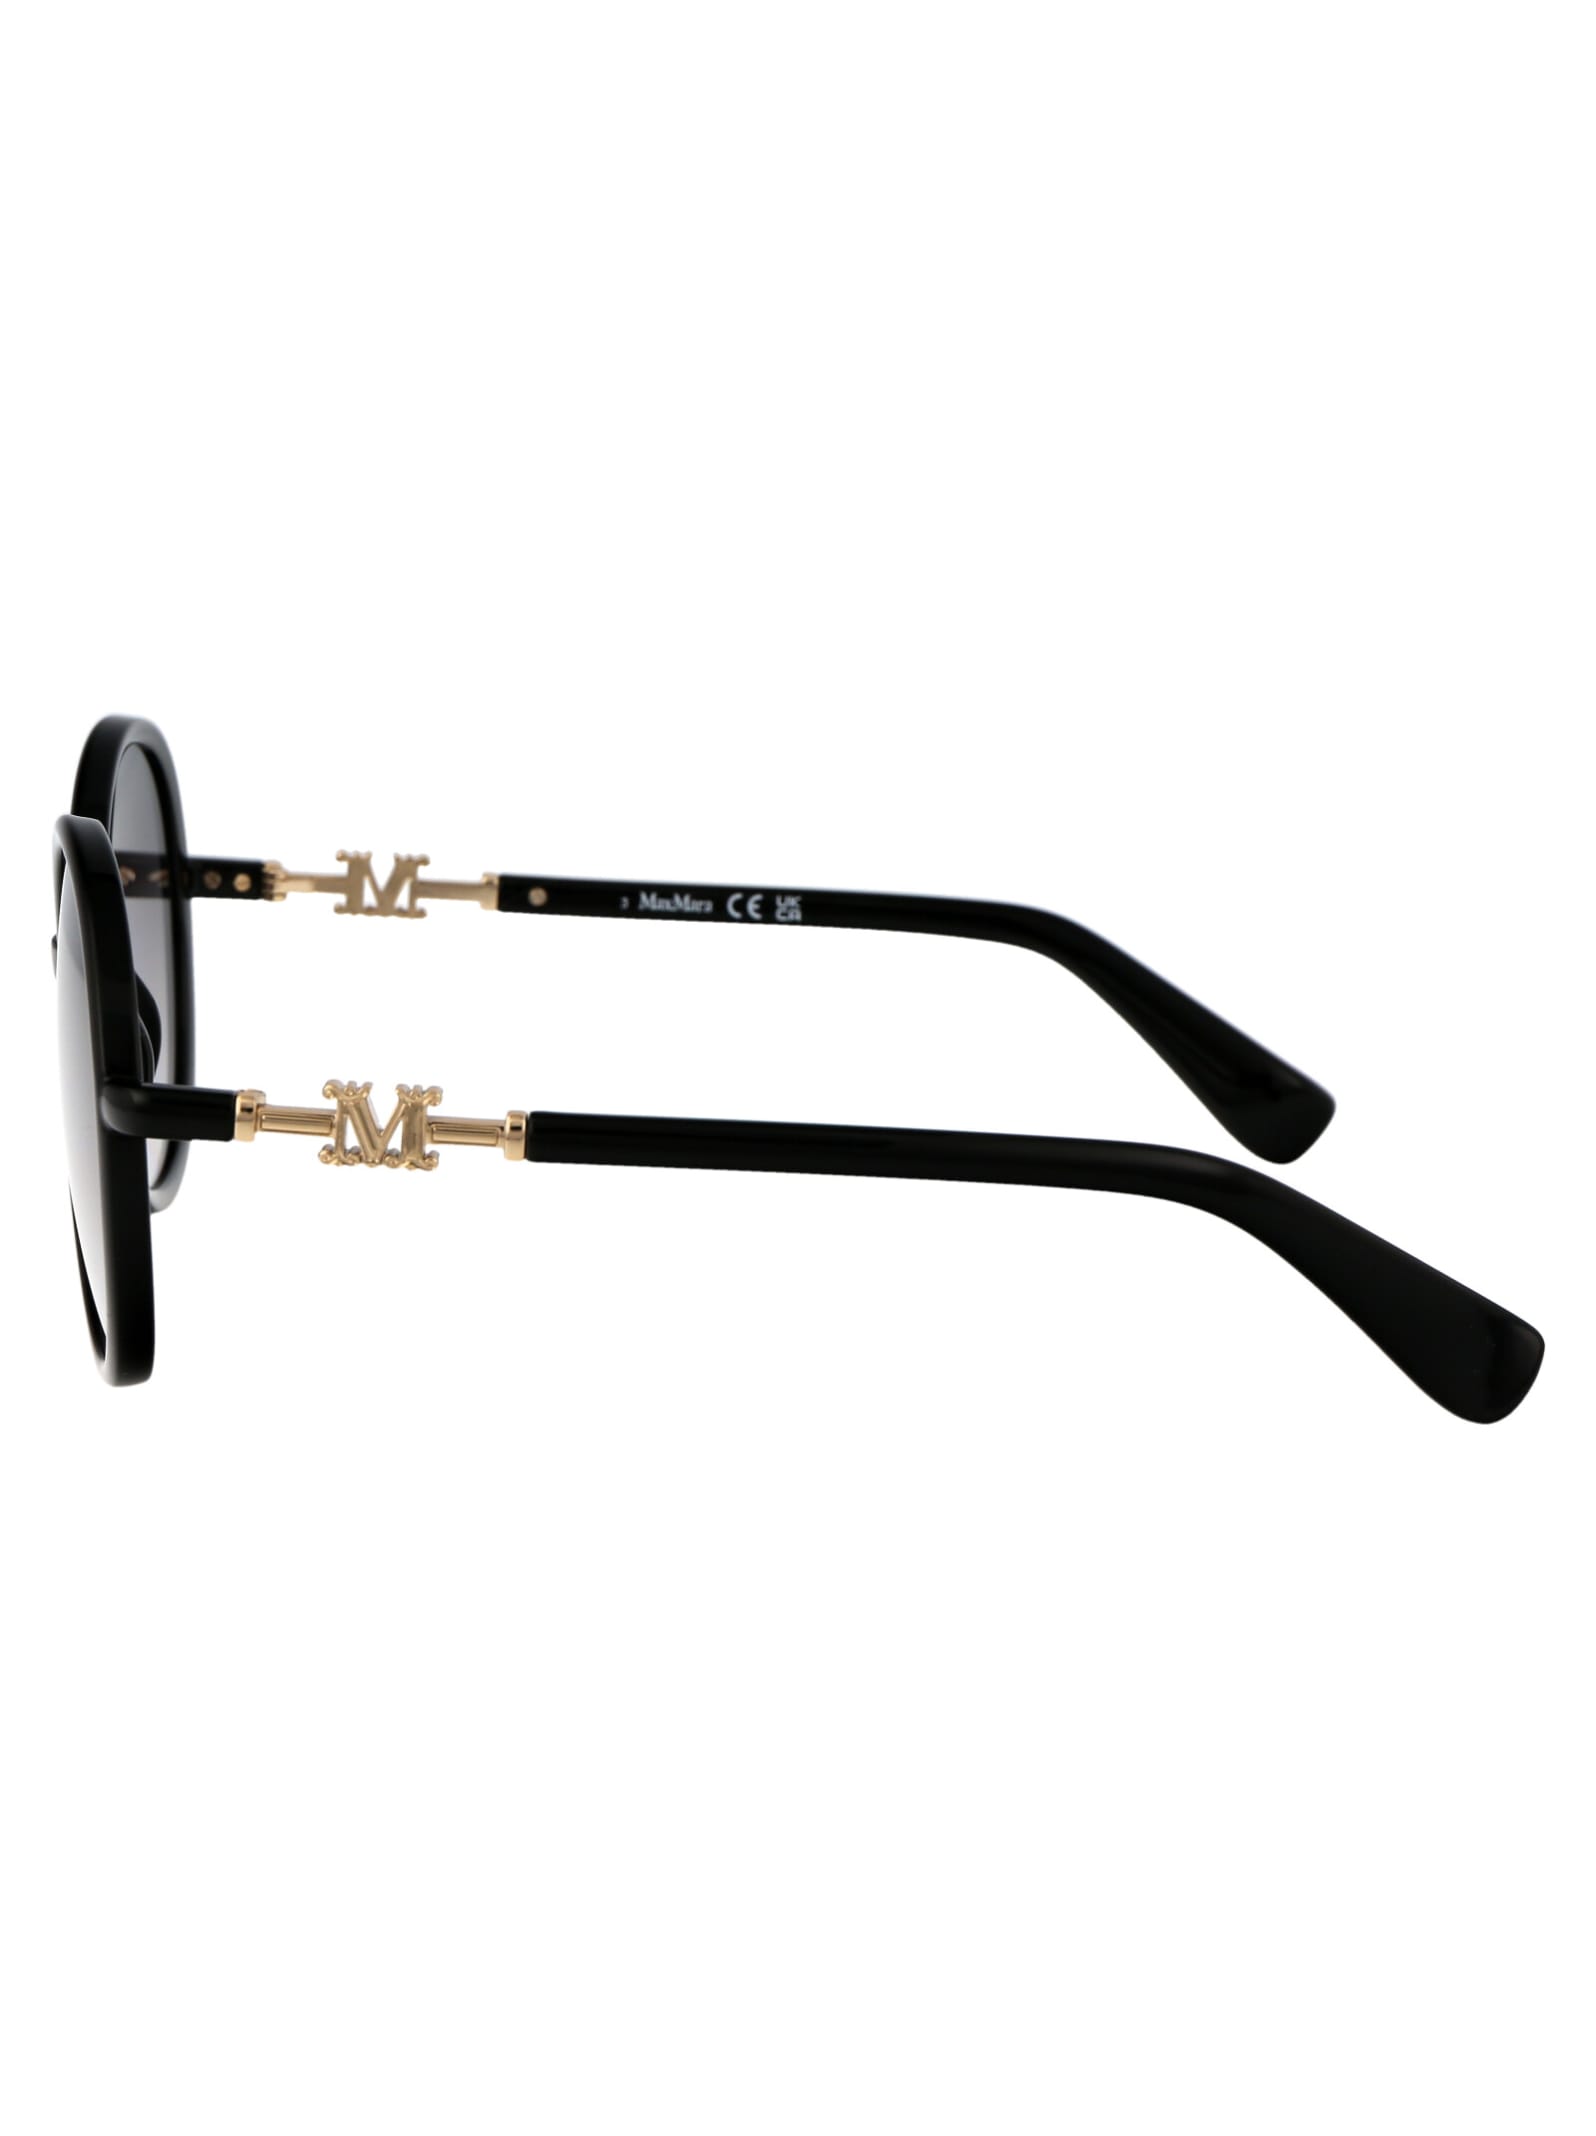 Shop Max Mara Emme15 Sunglasses In 01b Nero Lucido/fumo Grad